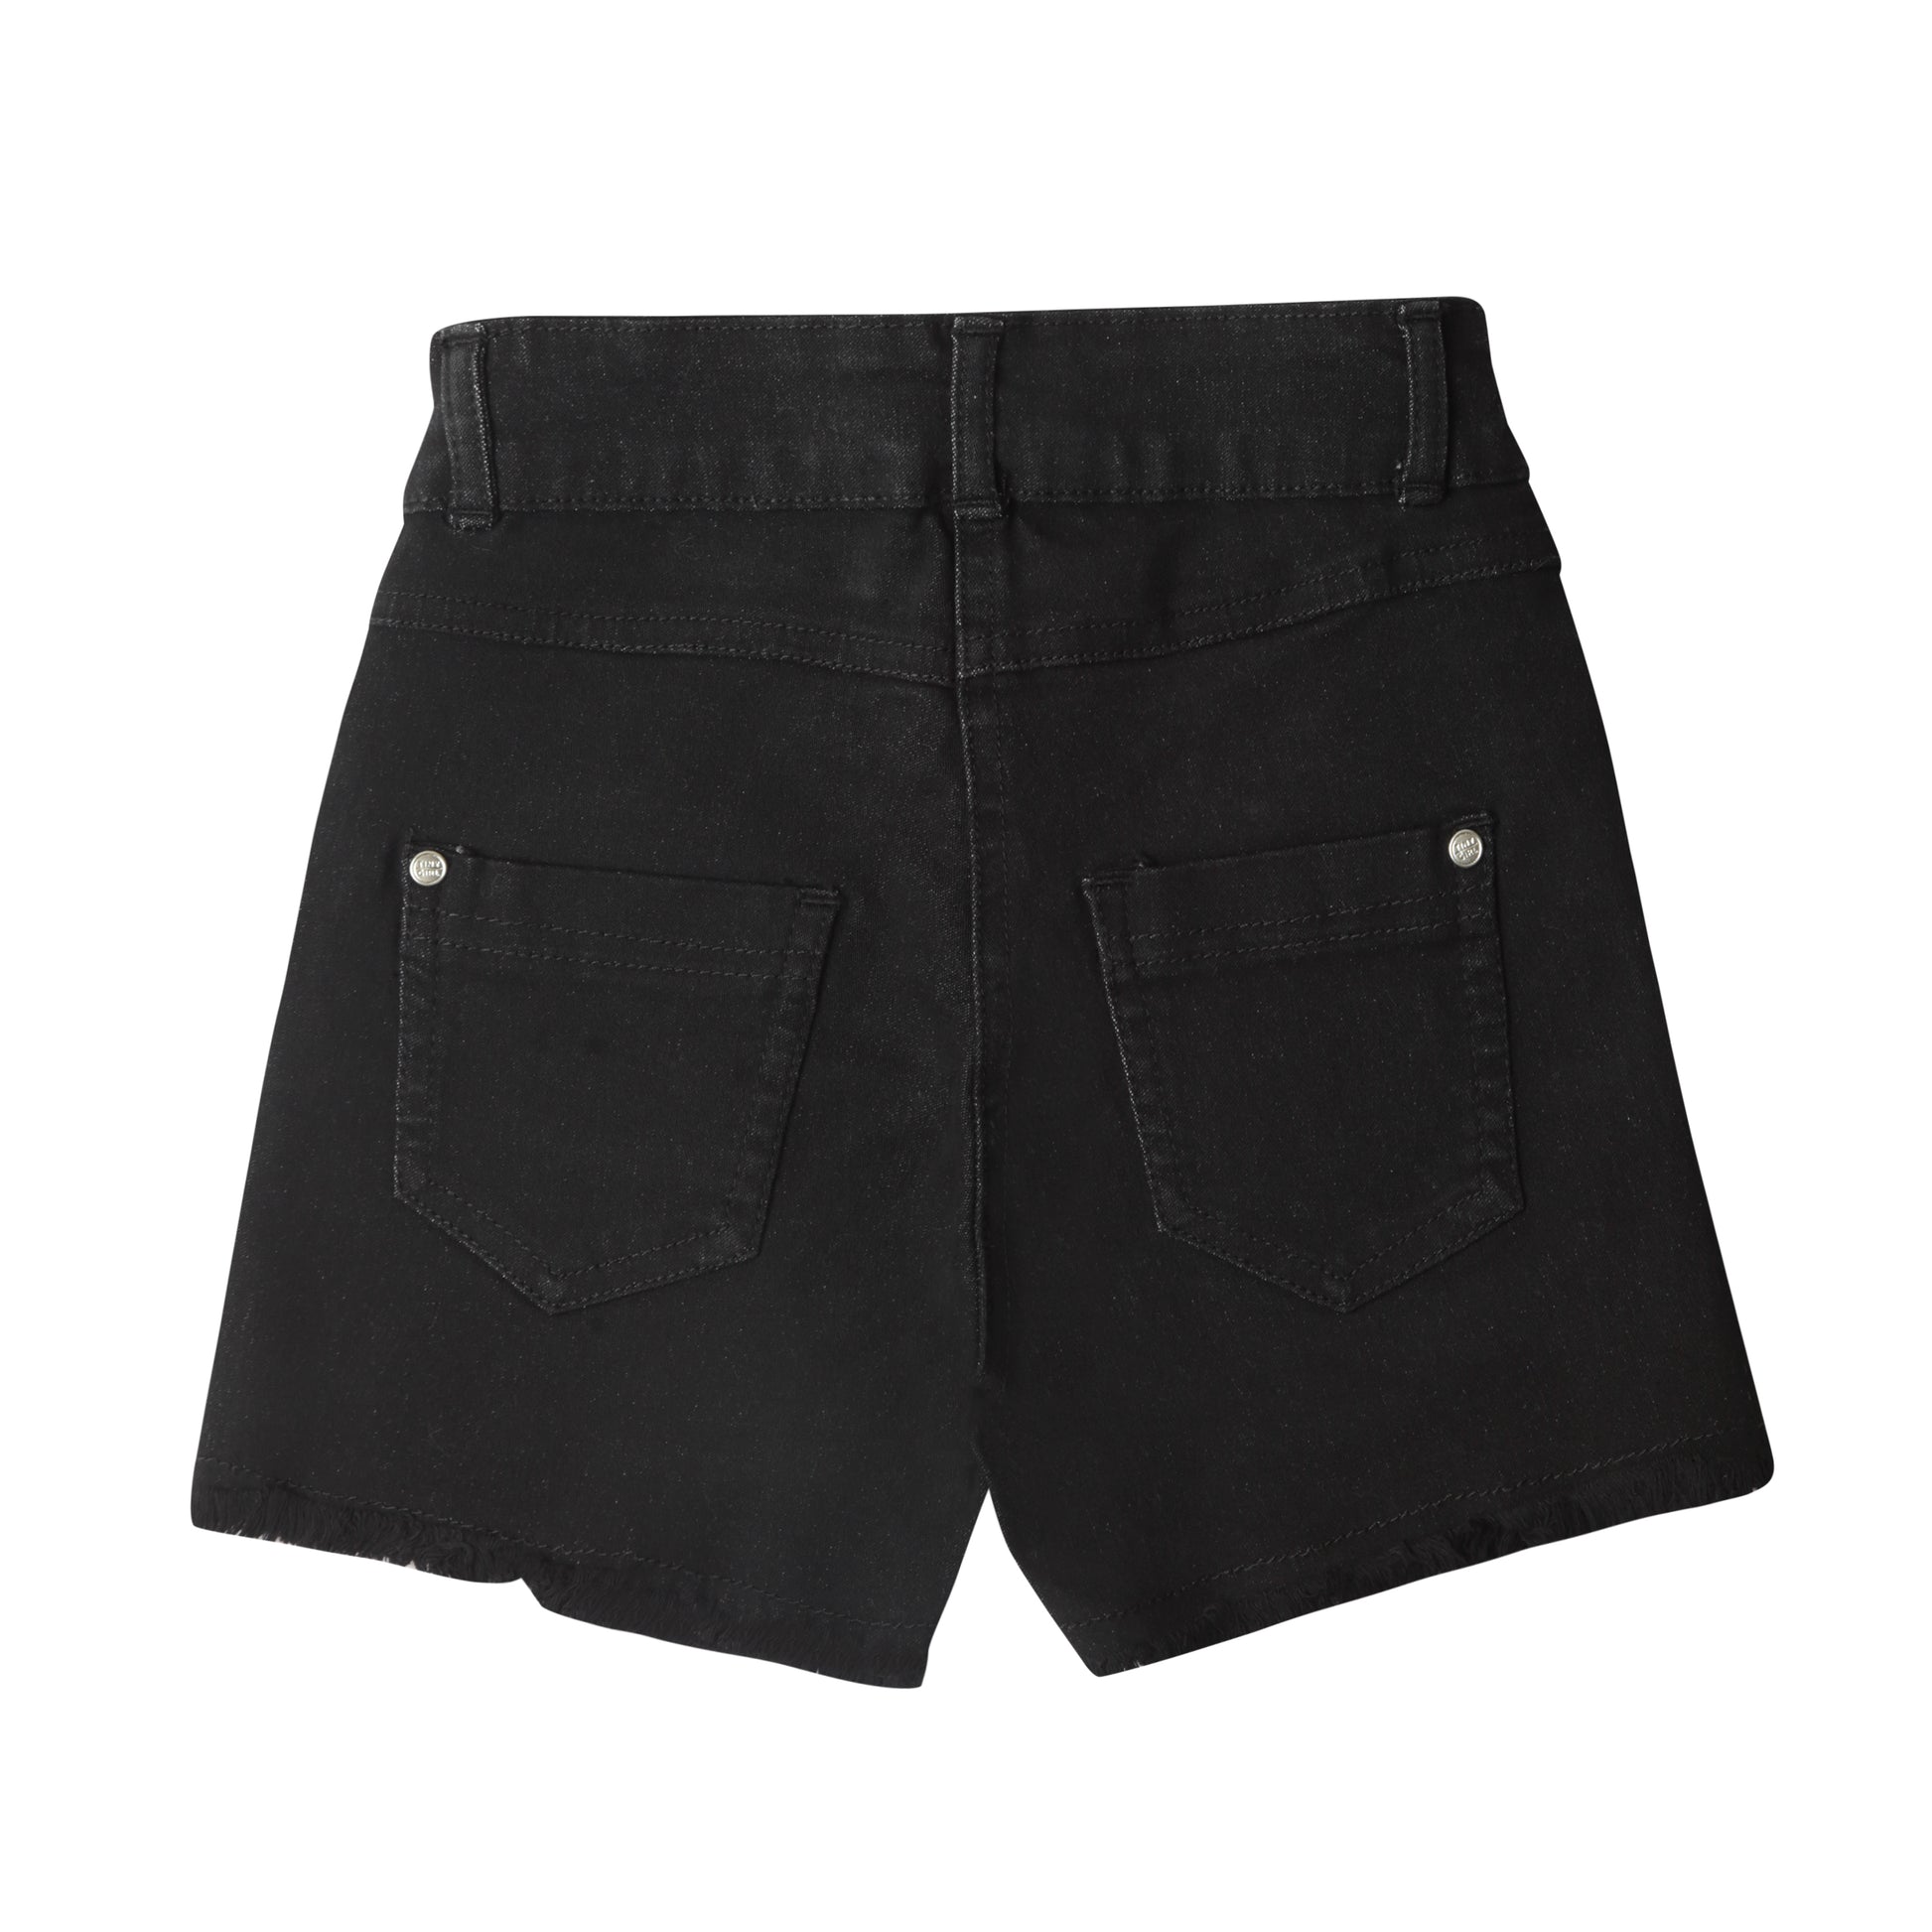 Plain Black Shorts